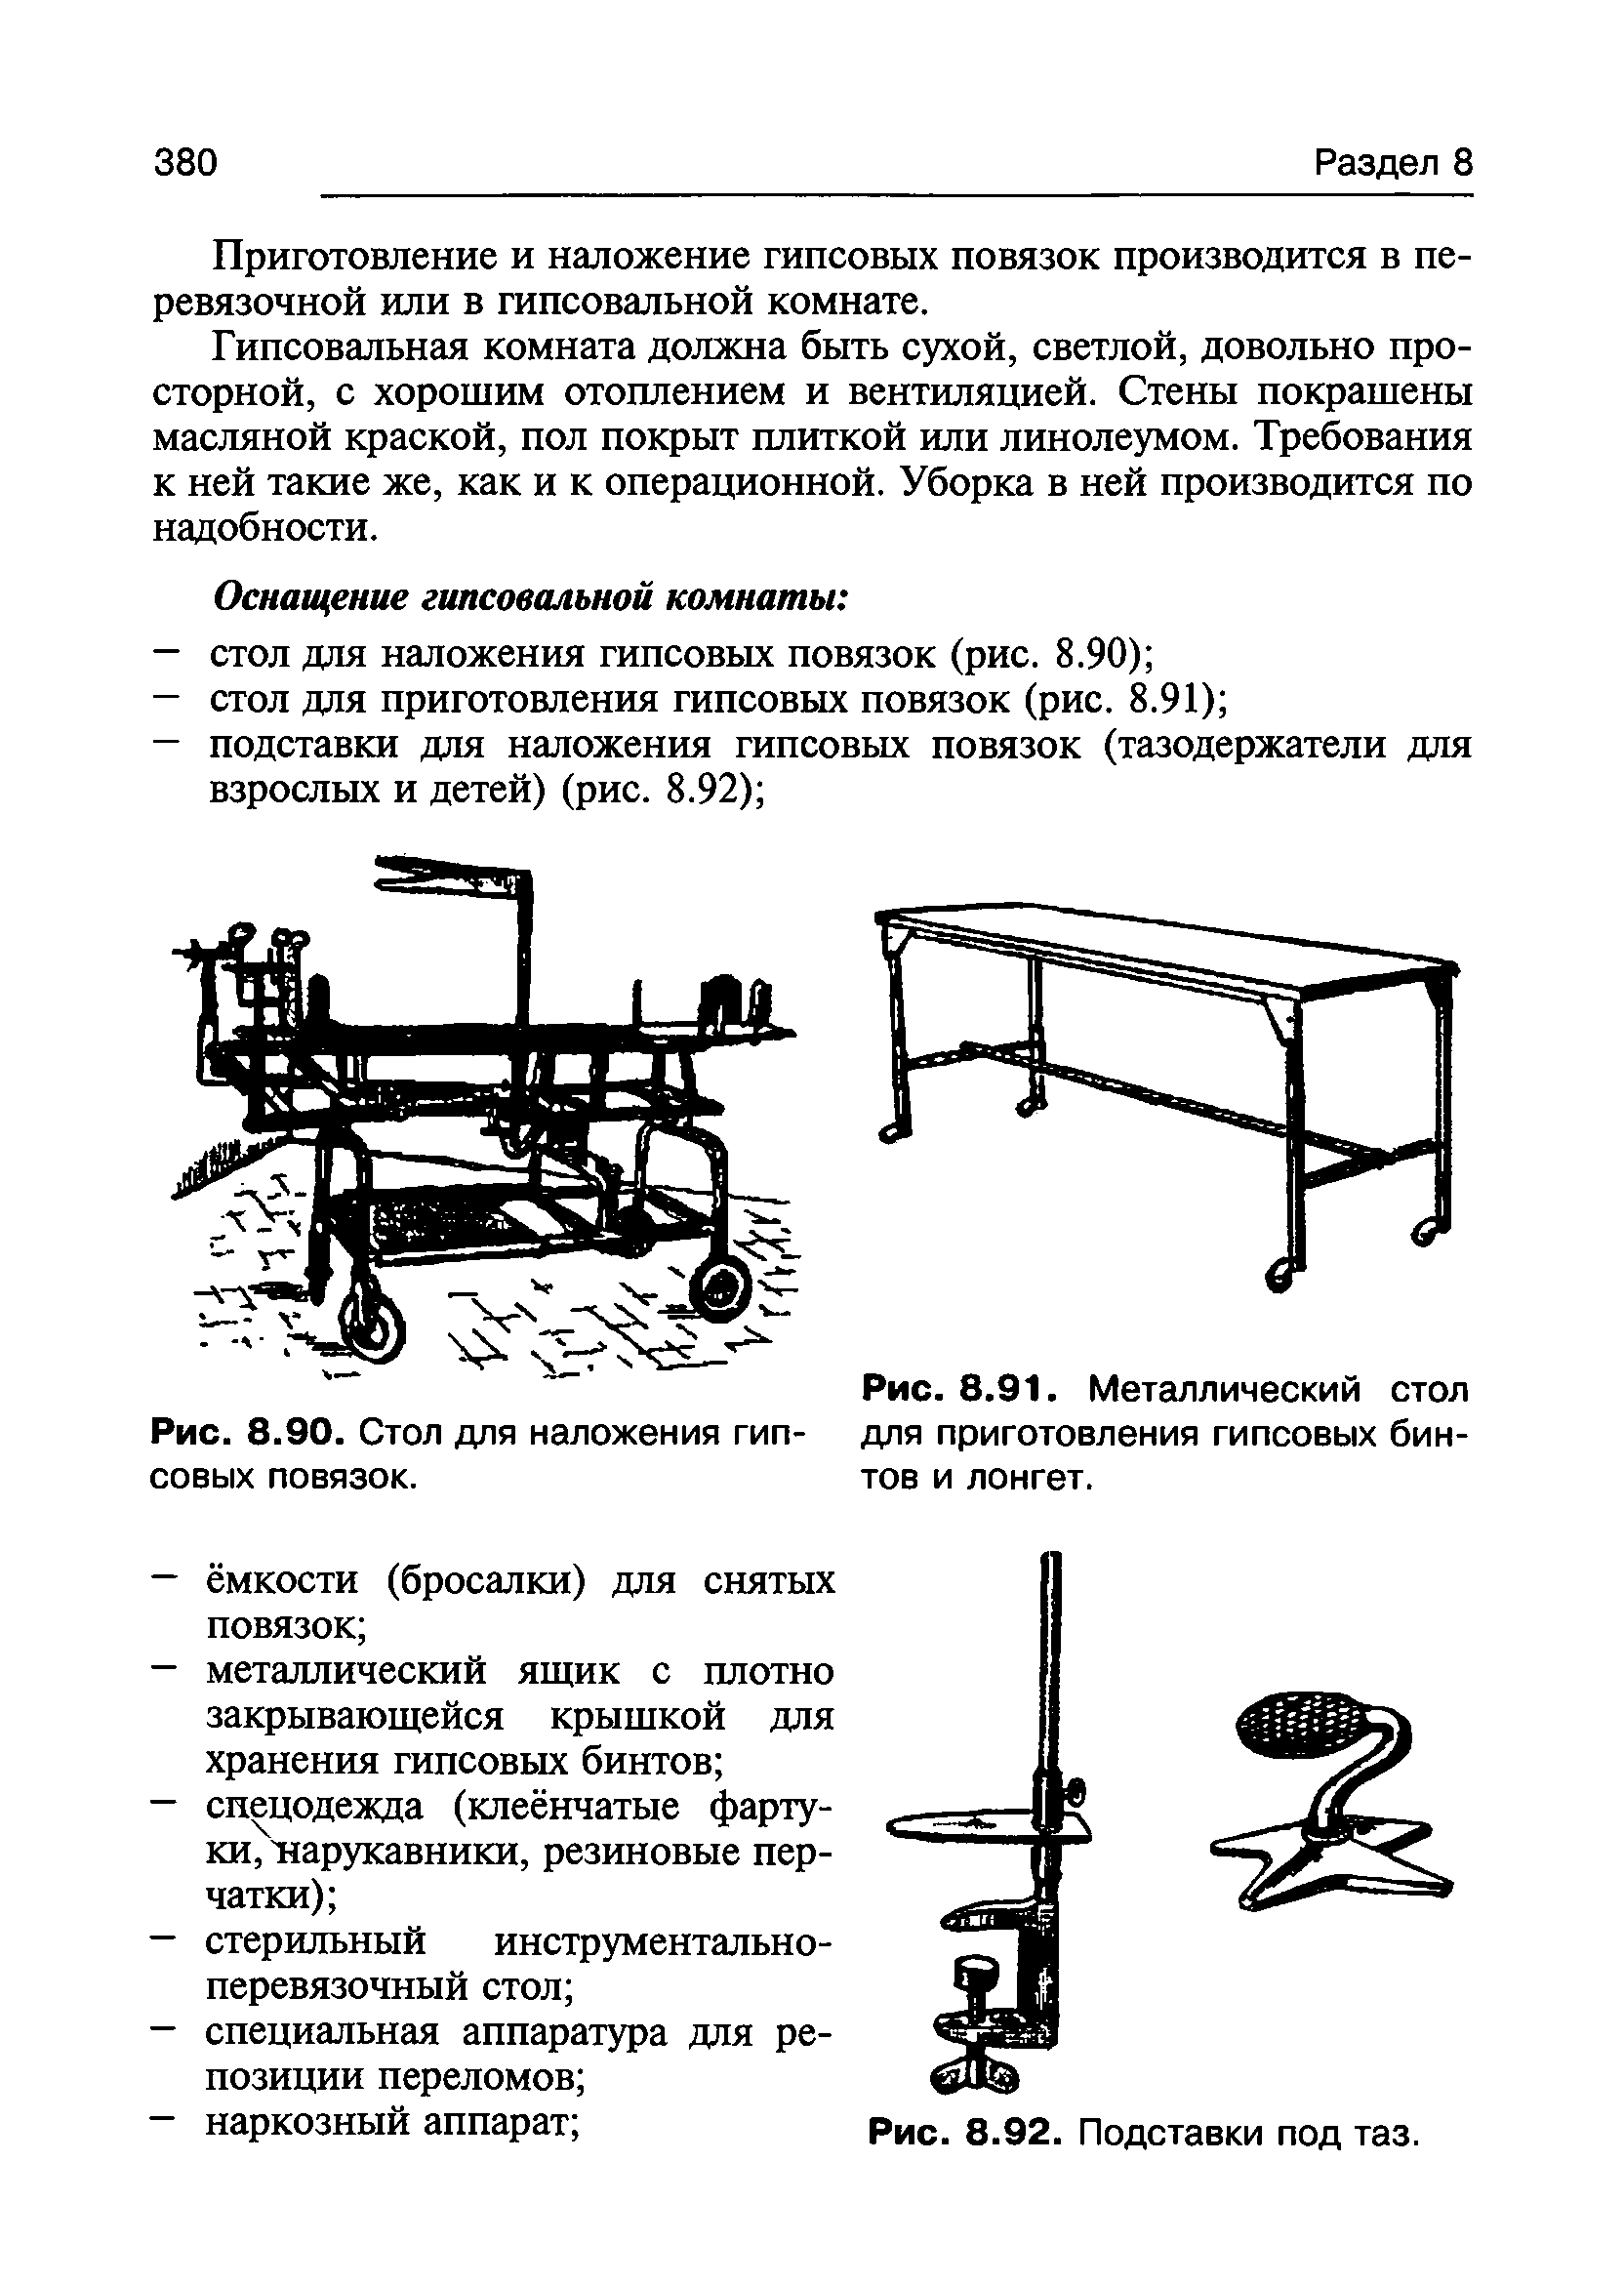 Рис. 8.91. Металлический стол для приготовления гипсовых бинтов и лонгет.